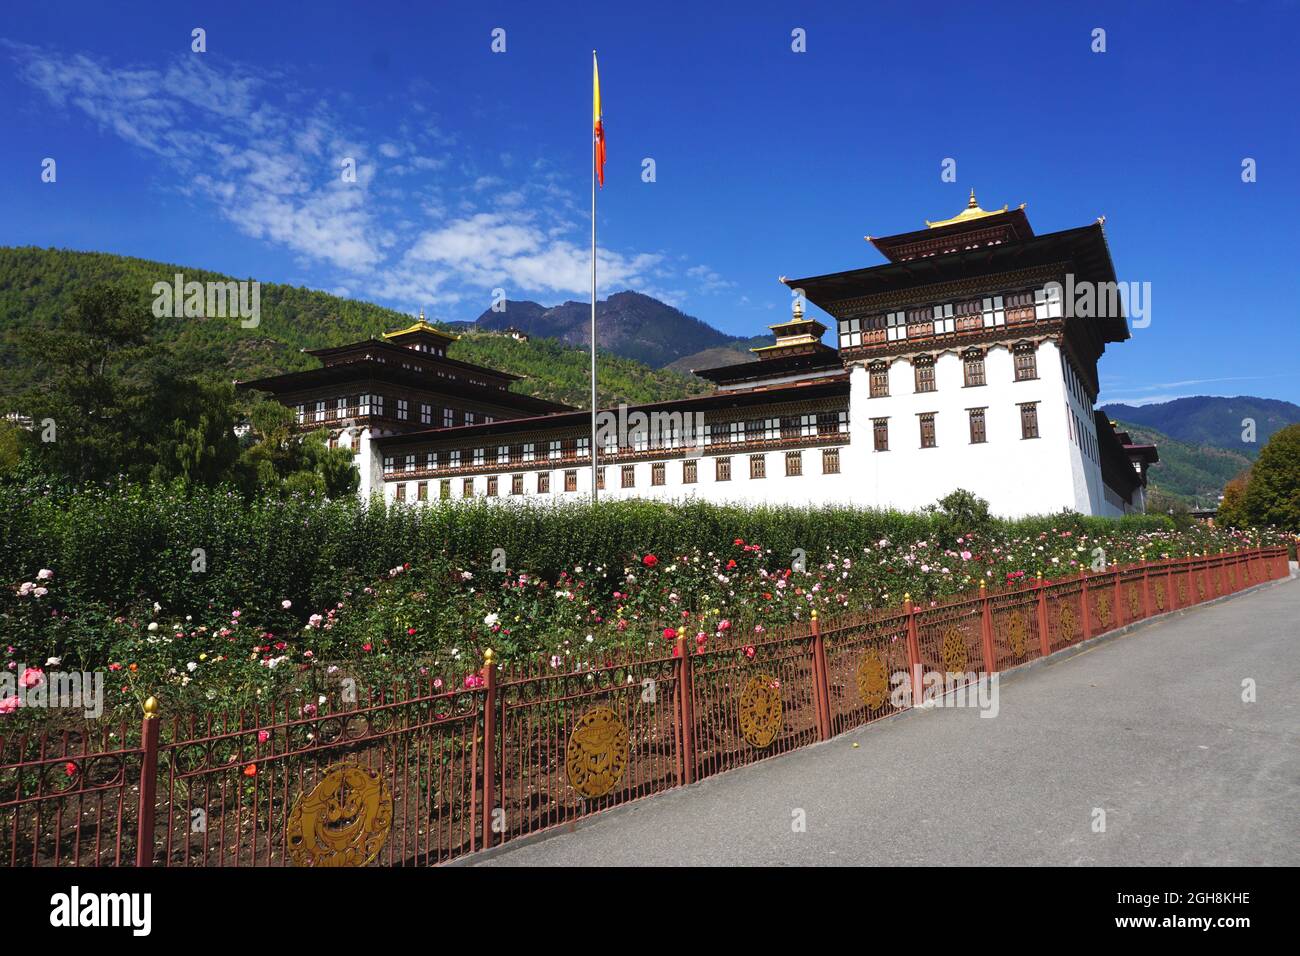 Tashichho Dzong liegt am Fluss Wang Chhu in der Nähe von Thimphu und beherbergt den Thronsaal und die Büros des Königs. Wunderschöne Gärten füllen das Gelände. Stockfoto